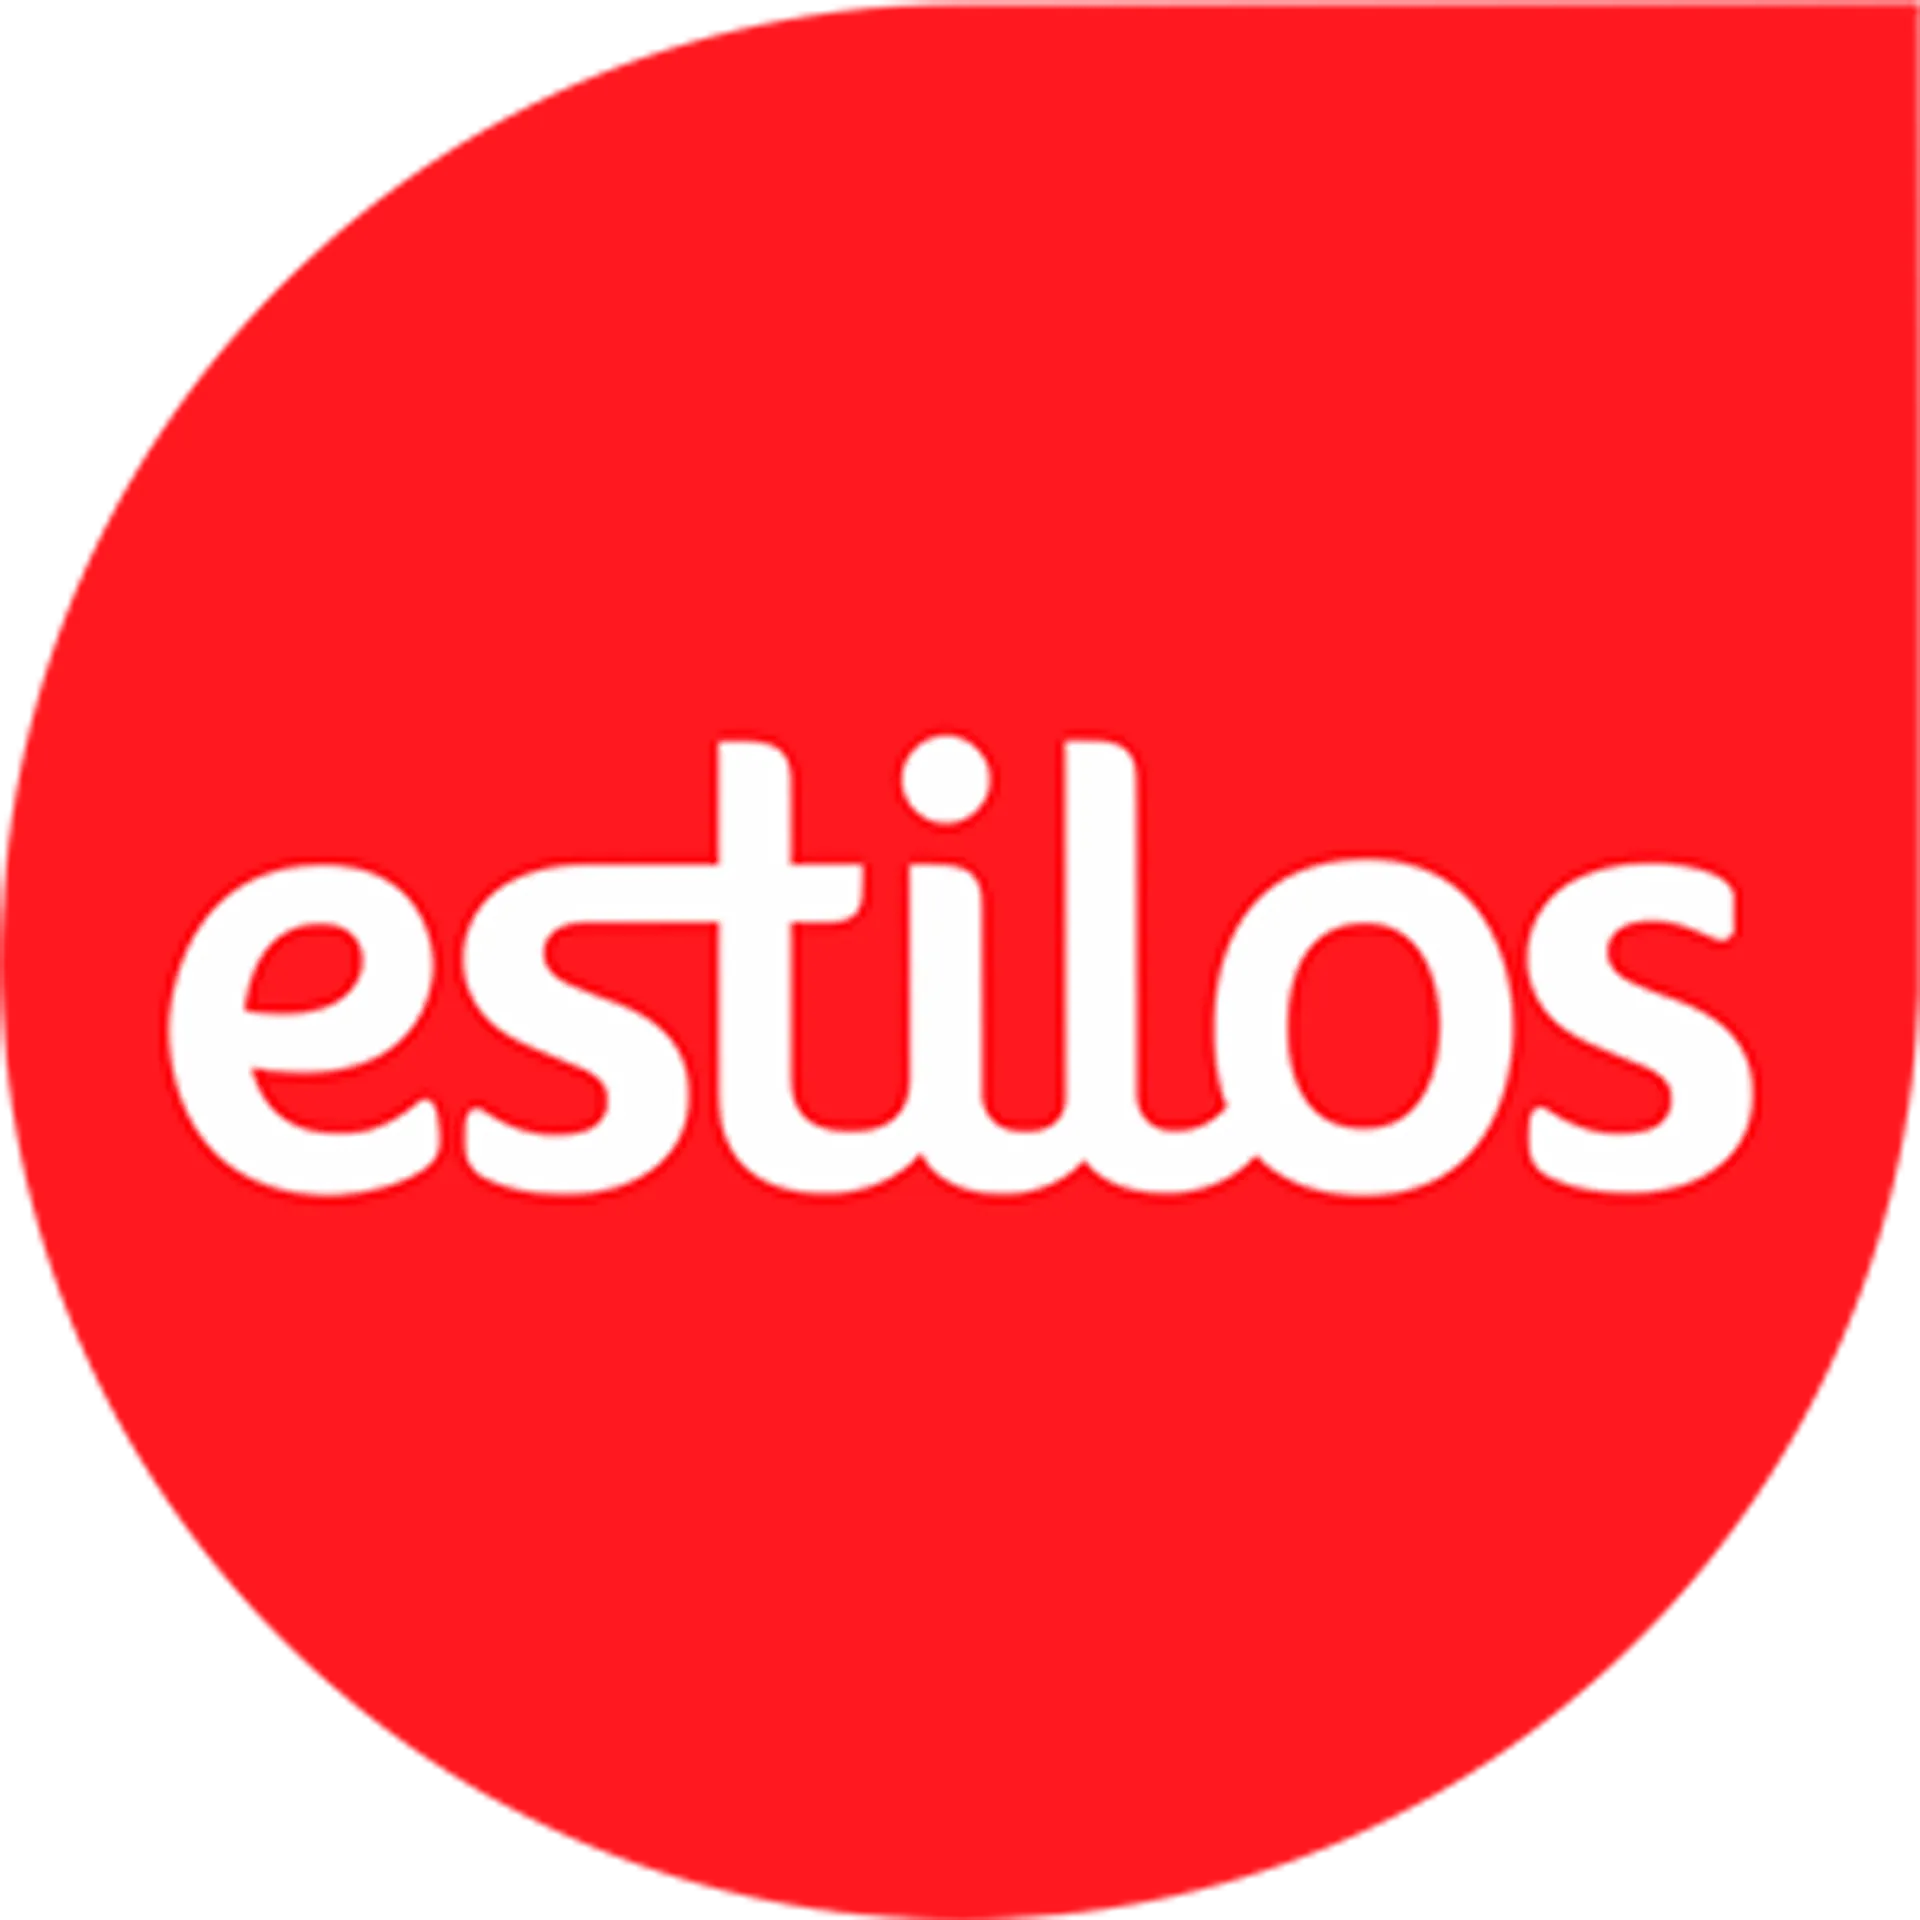 ESTILOS logo